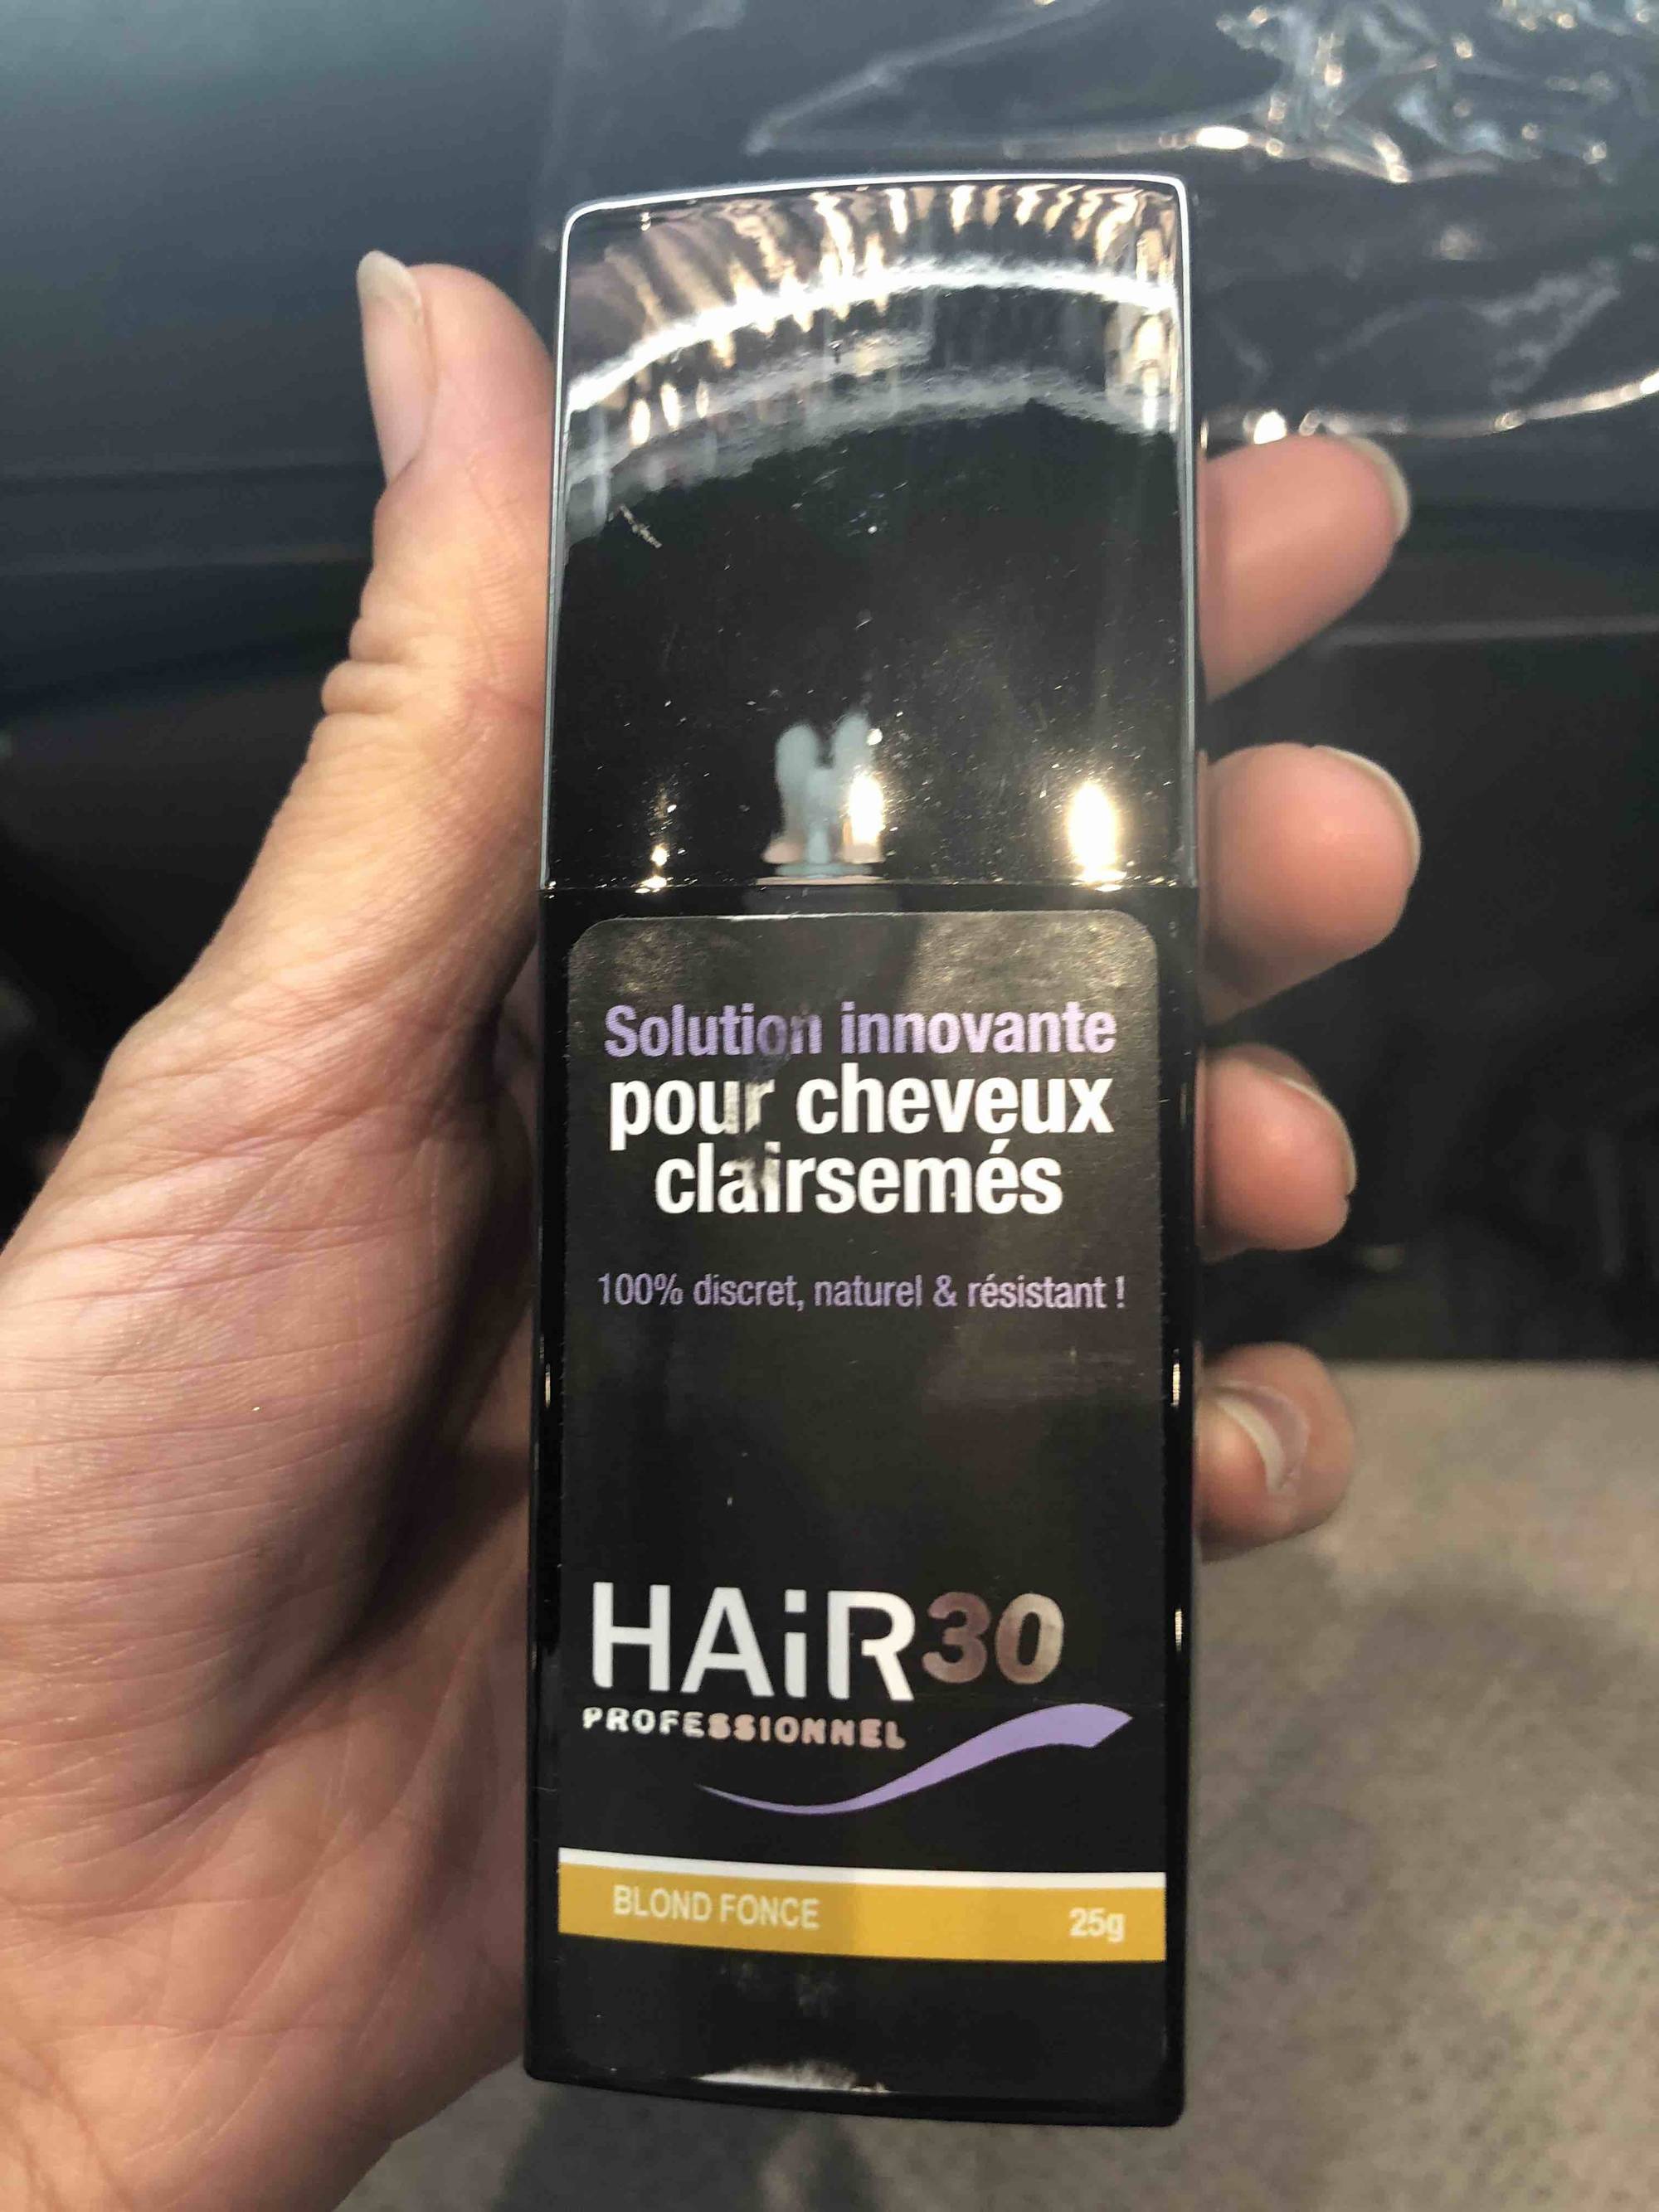 HAIR 30 - Solution innovante pour cheveux clairsemés